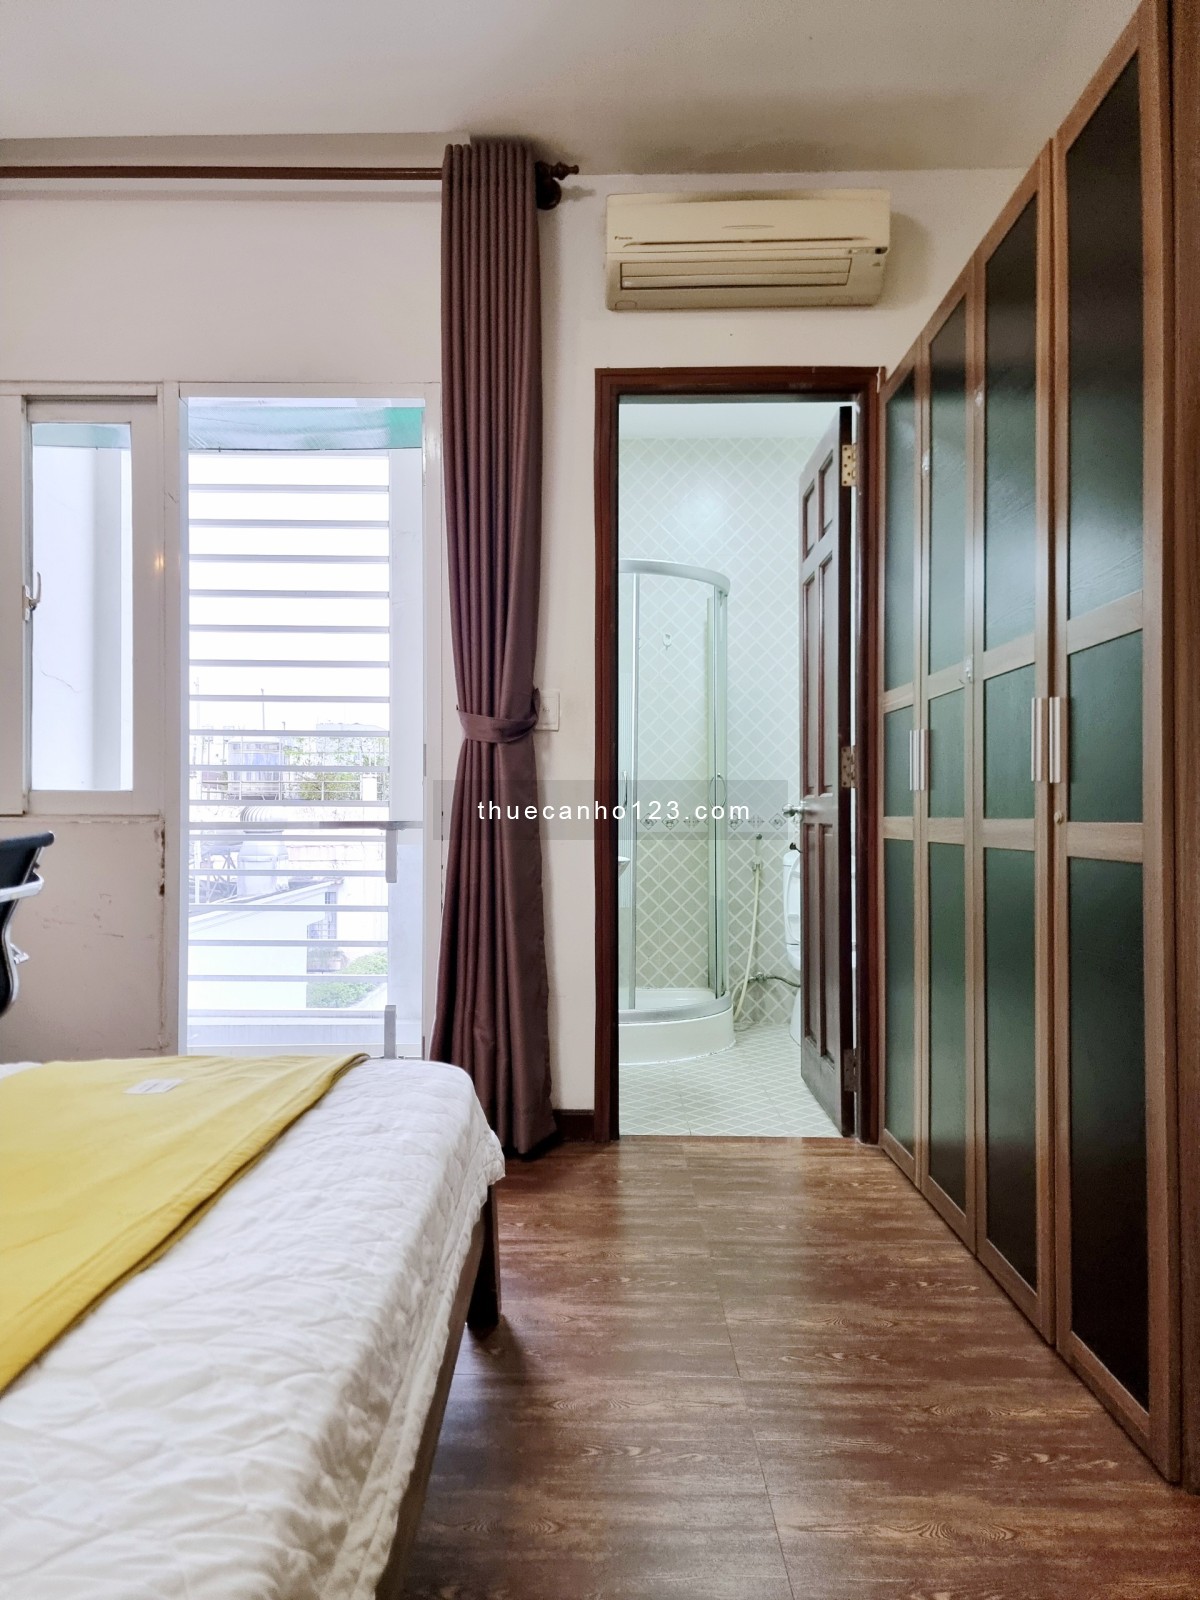 Căn hộ cao cấp 1 phòng ngủ balcony - Nguyễn Đình Chiểu - trung tâm quận 1